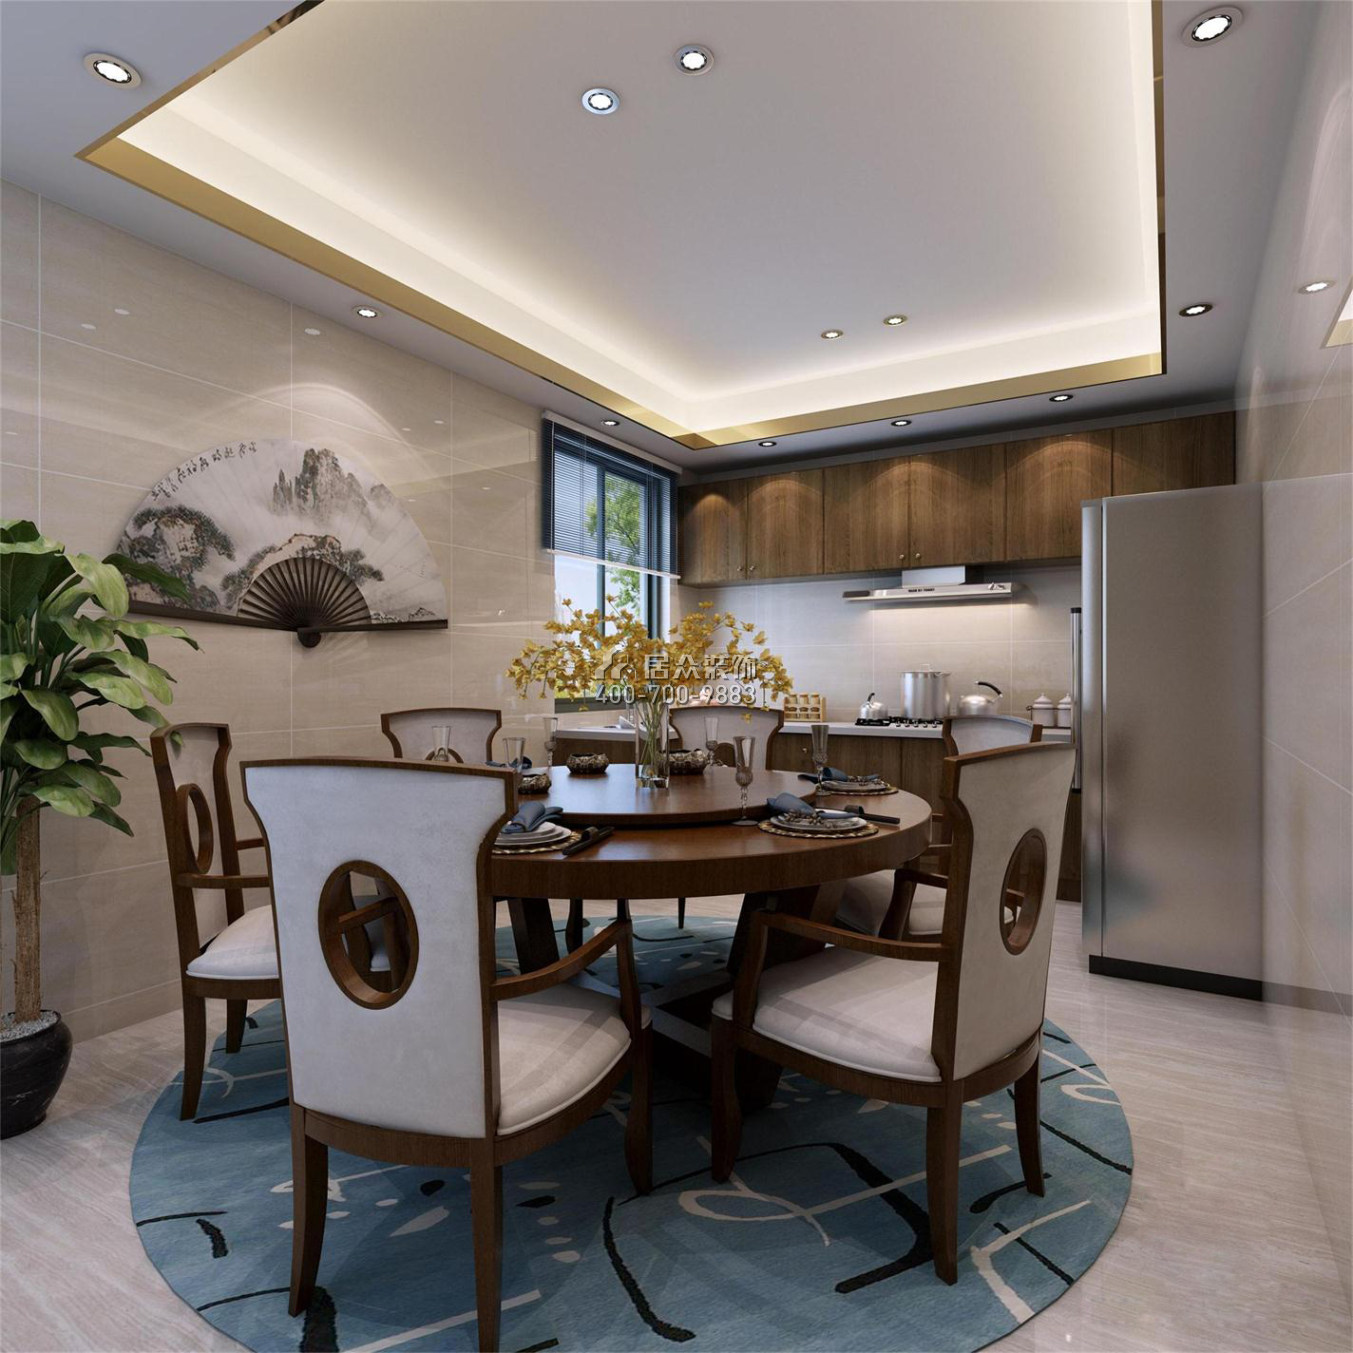 枫丹雅苑145平方米中式风格平层户型餐厅装修效果图